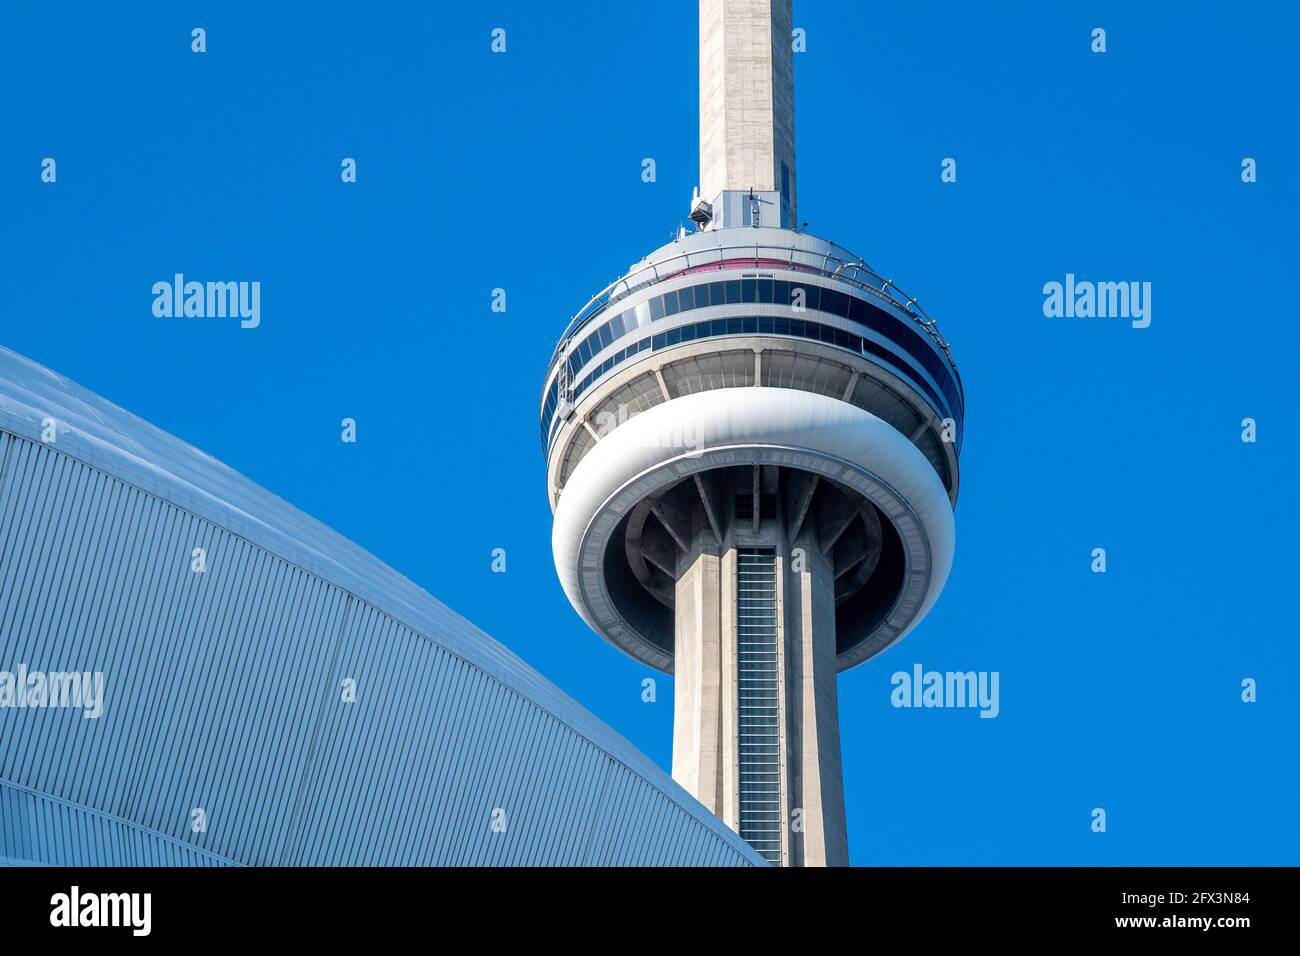 La CN Tower in una bella giornata cielo blu a Toronto, Canada. Il simbolo canadese è incorniciato nell'architettura del Rogers Centre Foto Stock